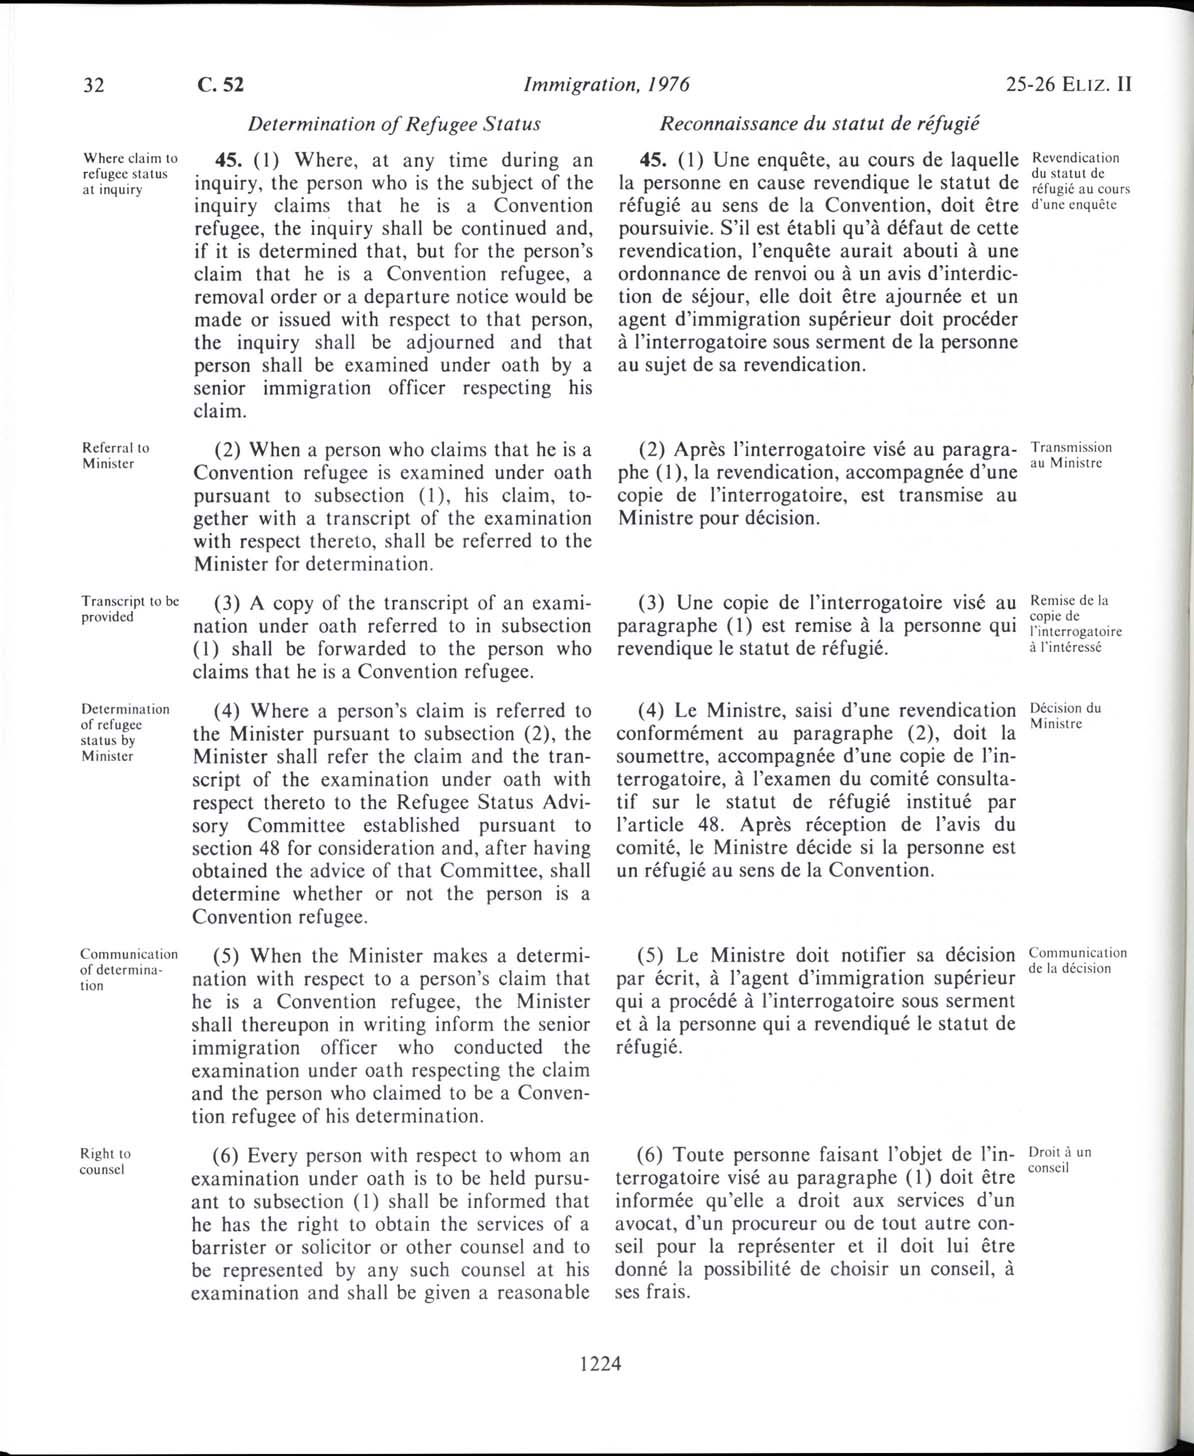 Page 1224 Loi sur l’immigration de 1976